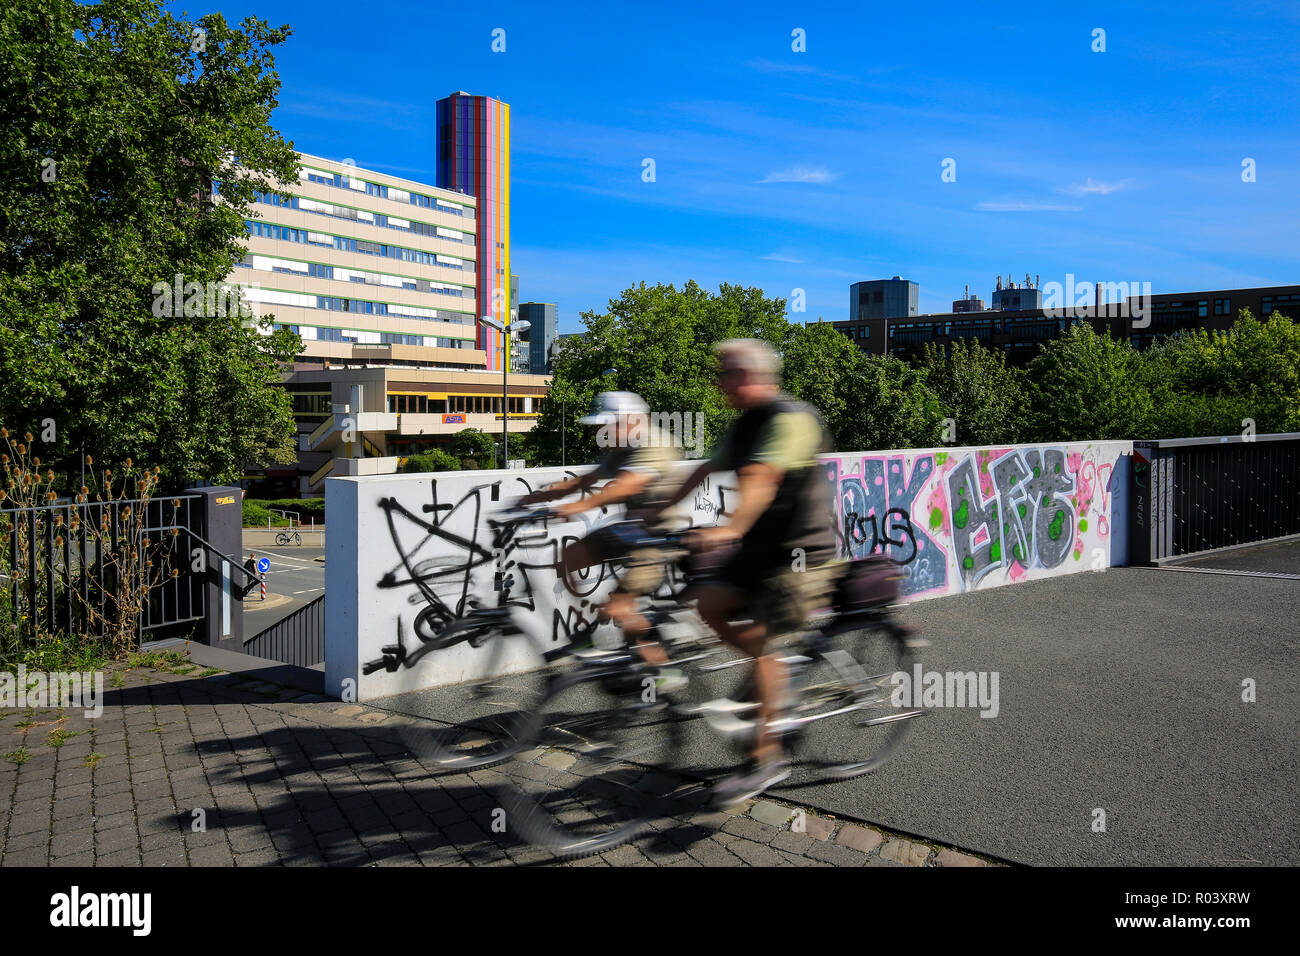 Essen, Ruhr, Allemagne, projet de développement urbain Gruene Mitte Essen, RS 1 cycle route express Banque D'Images